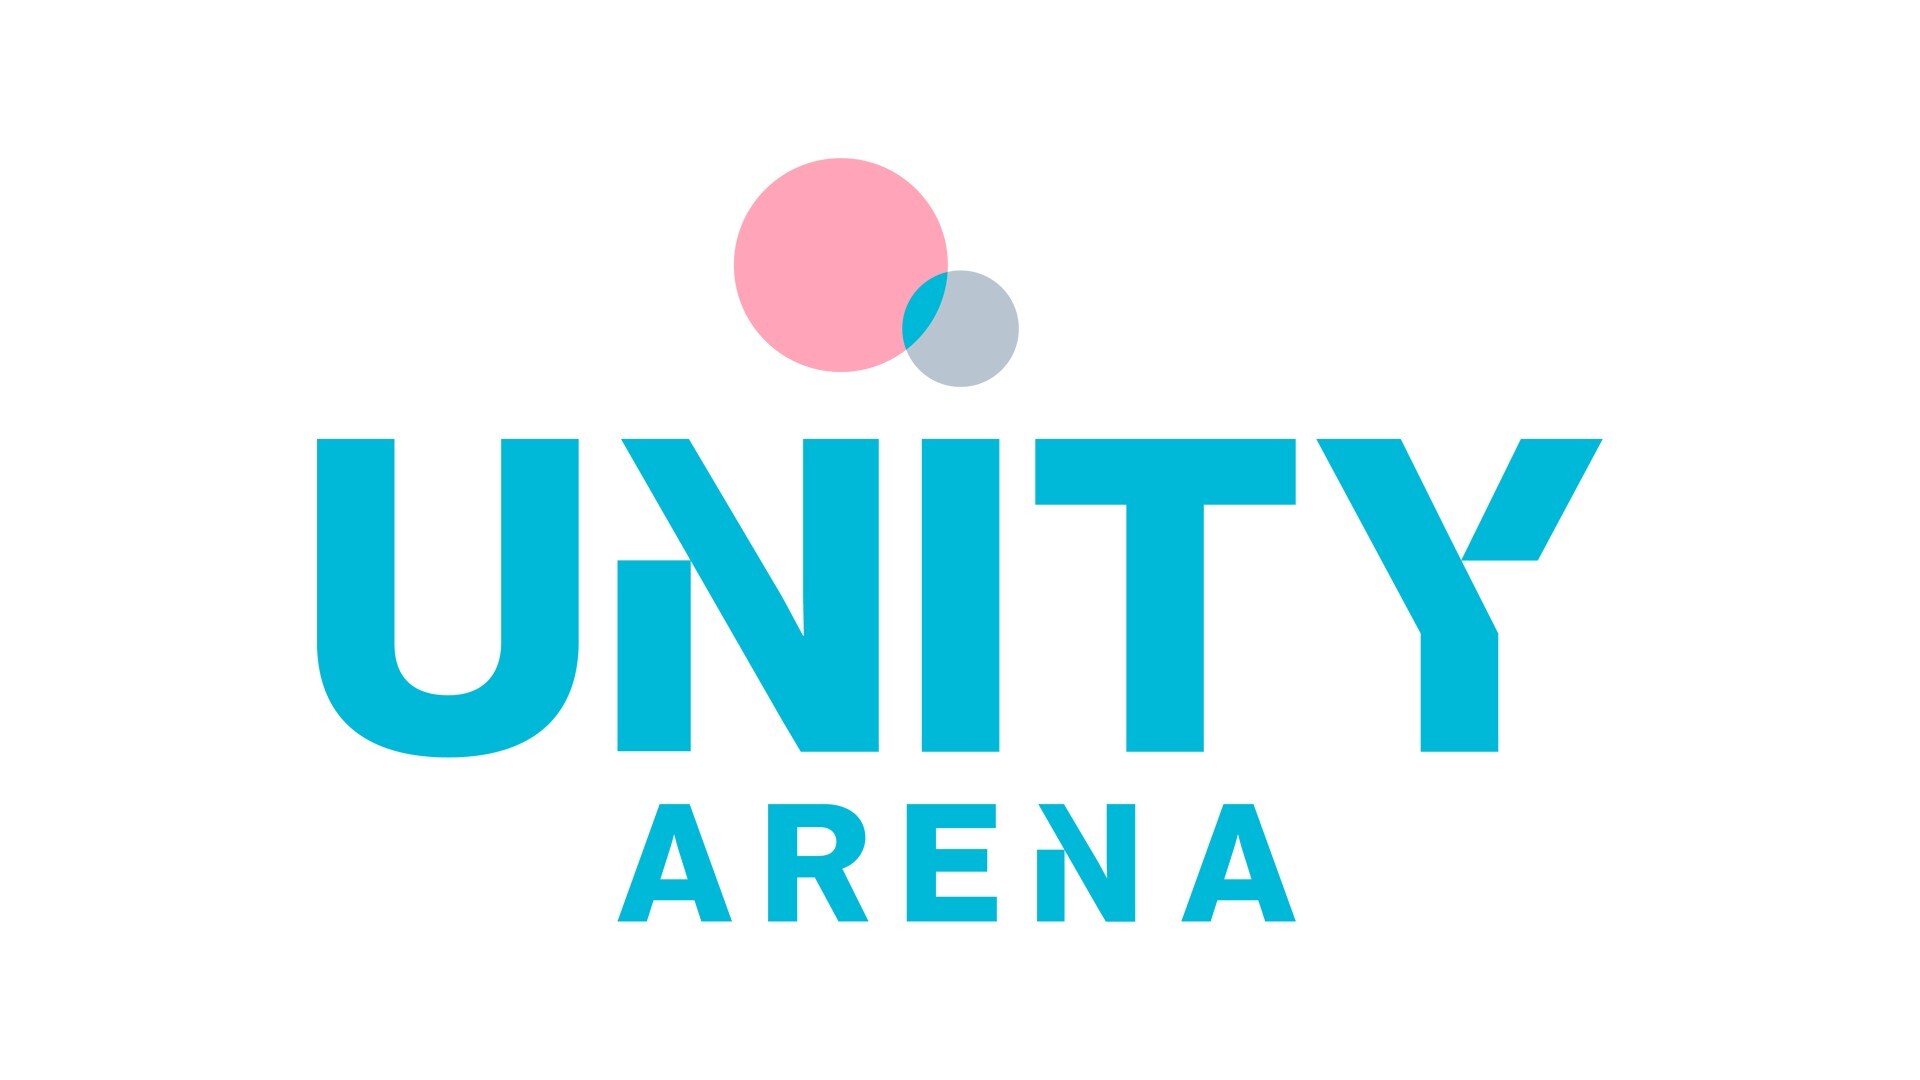 Telenor Arena bytter navn til Unity Arena!